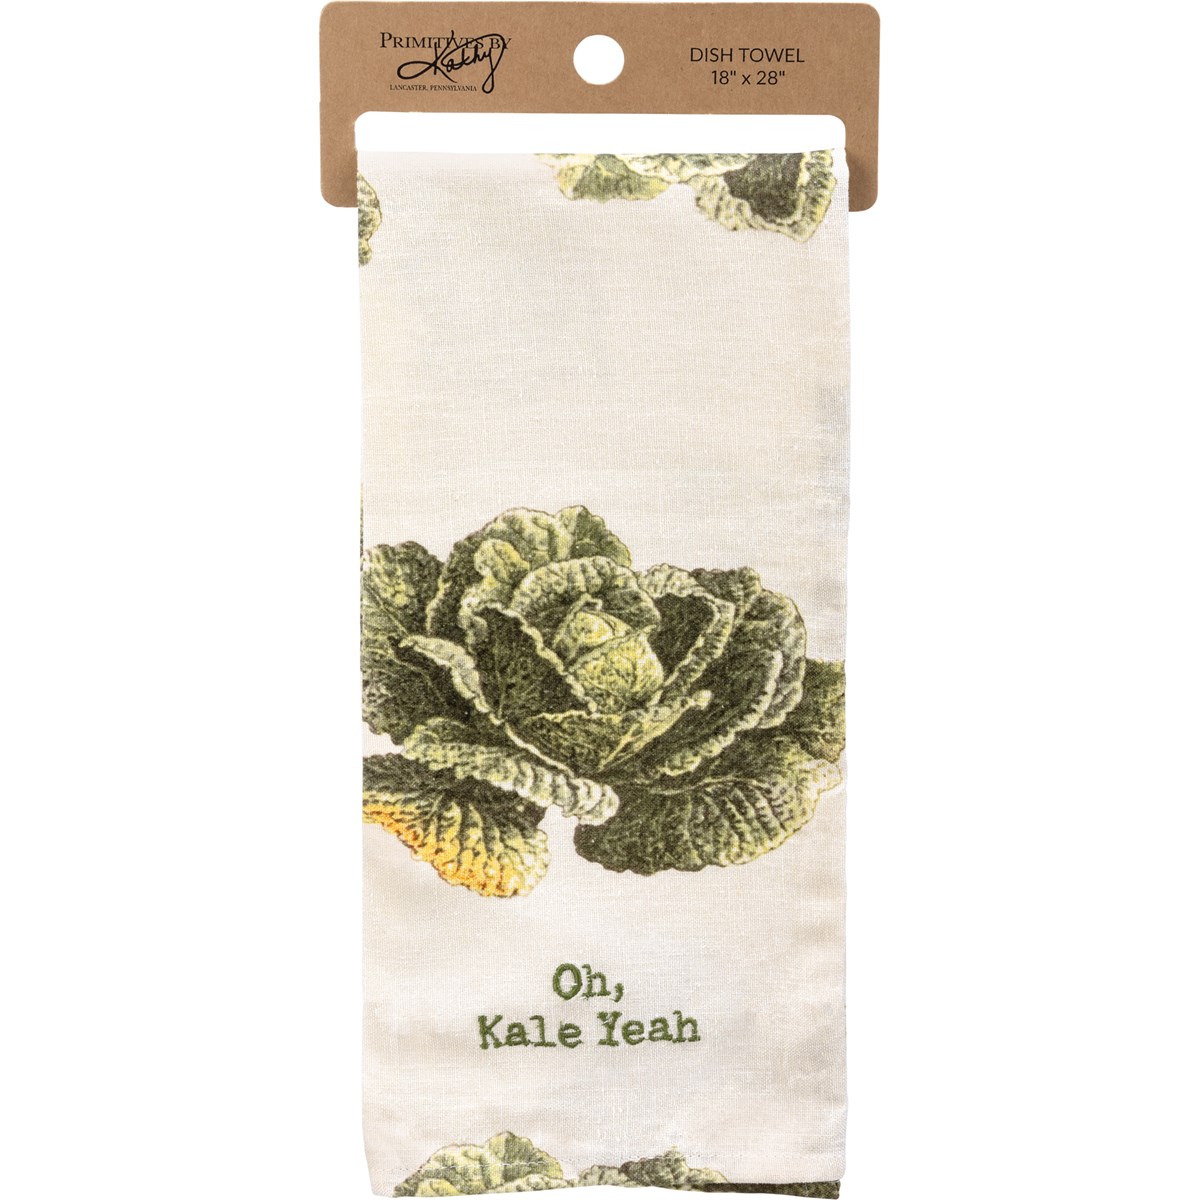 Oh, Kale Yeah Kitchen Towel - Cotton, Linen